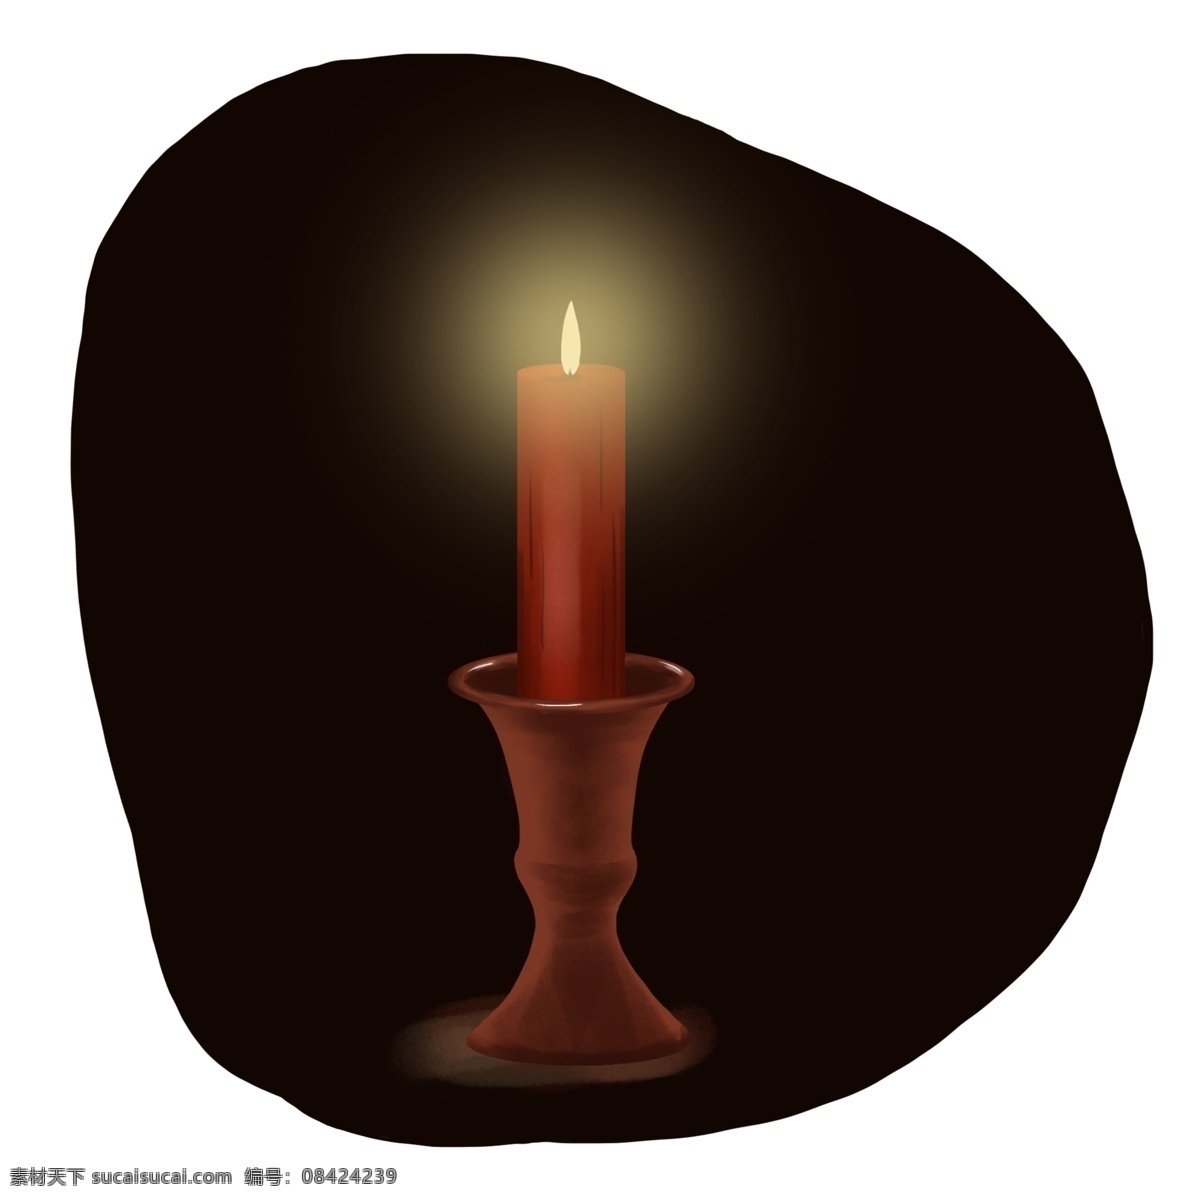 祈祷 祈福 蜡烛 手绘 元素 寄托 期盼 愿望 希望 祝福